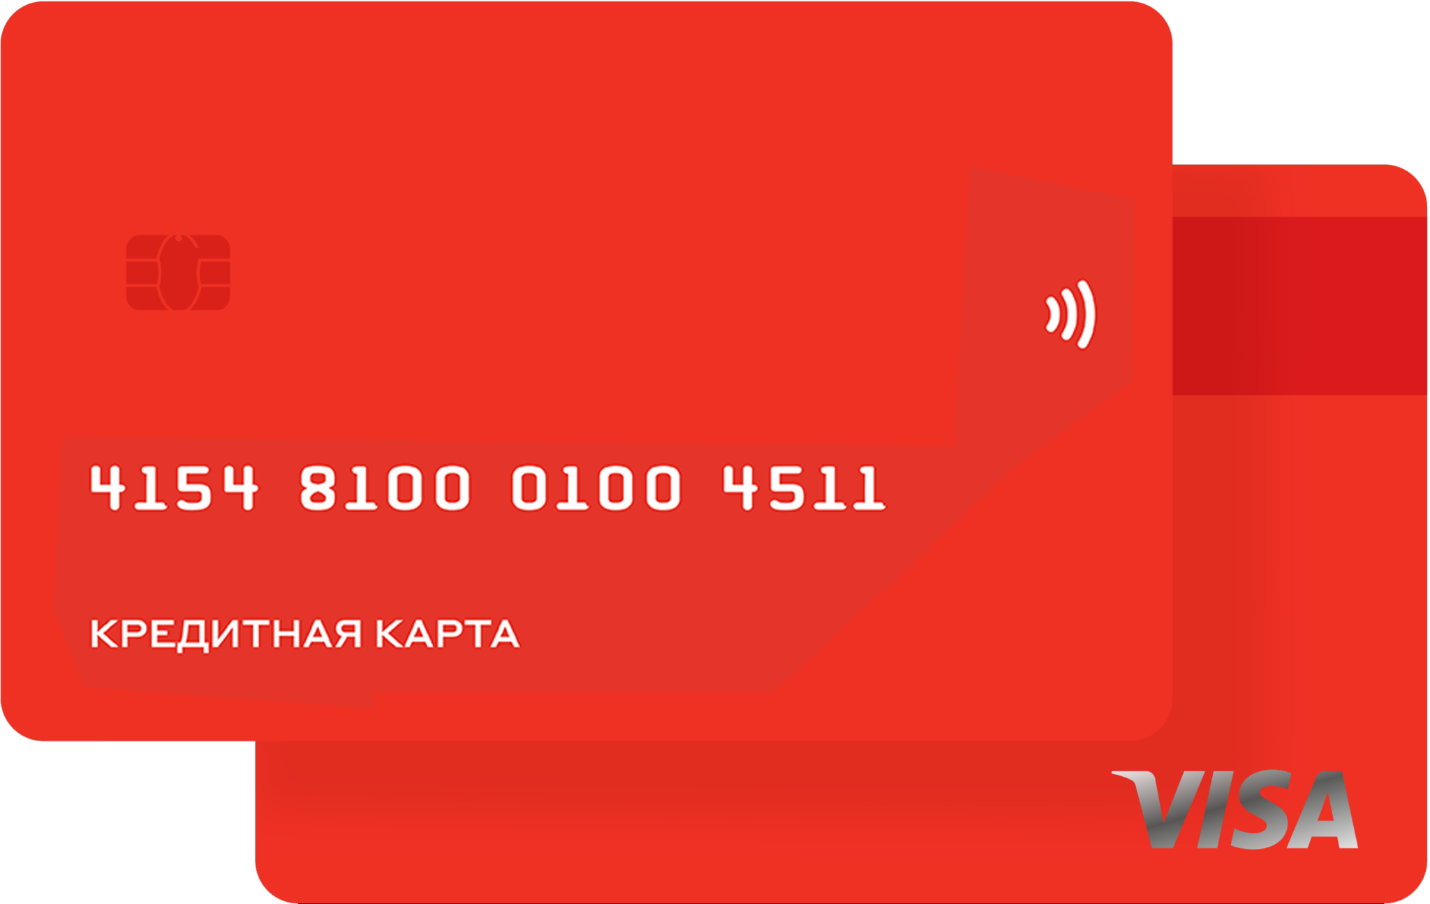 Закажите бесплатную кредитную карту альфа банка. Красная кредитная карта. Кредитка альабанка 100 дней без %. Карта Альфа банка 100 дней. Красная банковская карта.